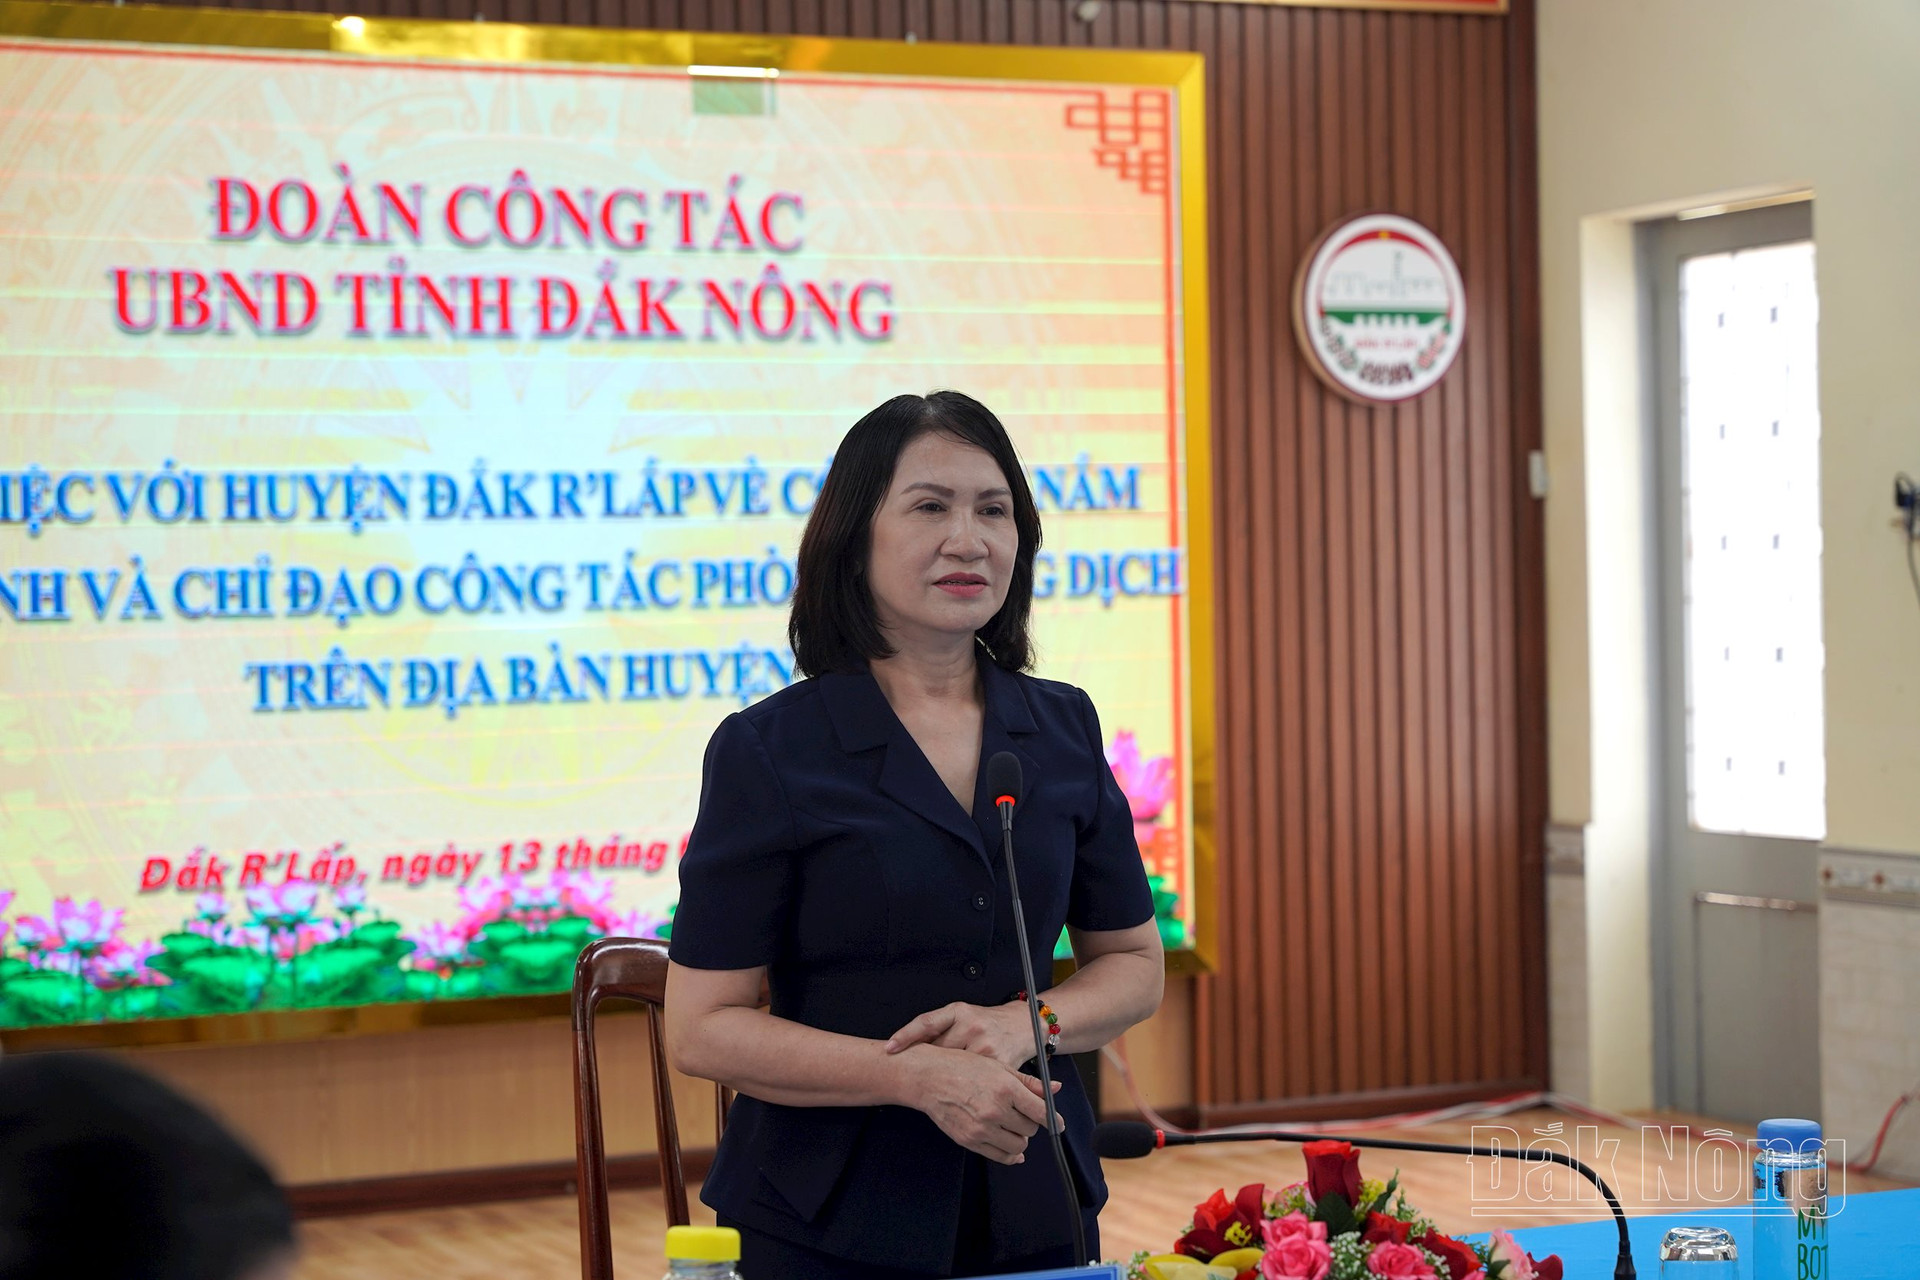 Phó Chủ tịch UBND tỉnh Tôn Thị Ngọc Hạnh đánh giá cao sự chủ động vào cuộc của ngành Y tế và chính quyền địa phương